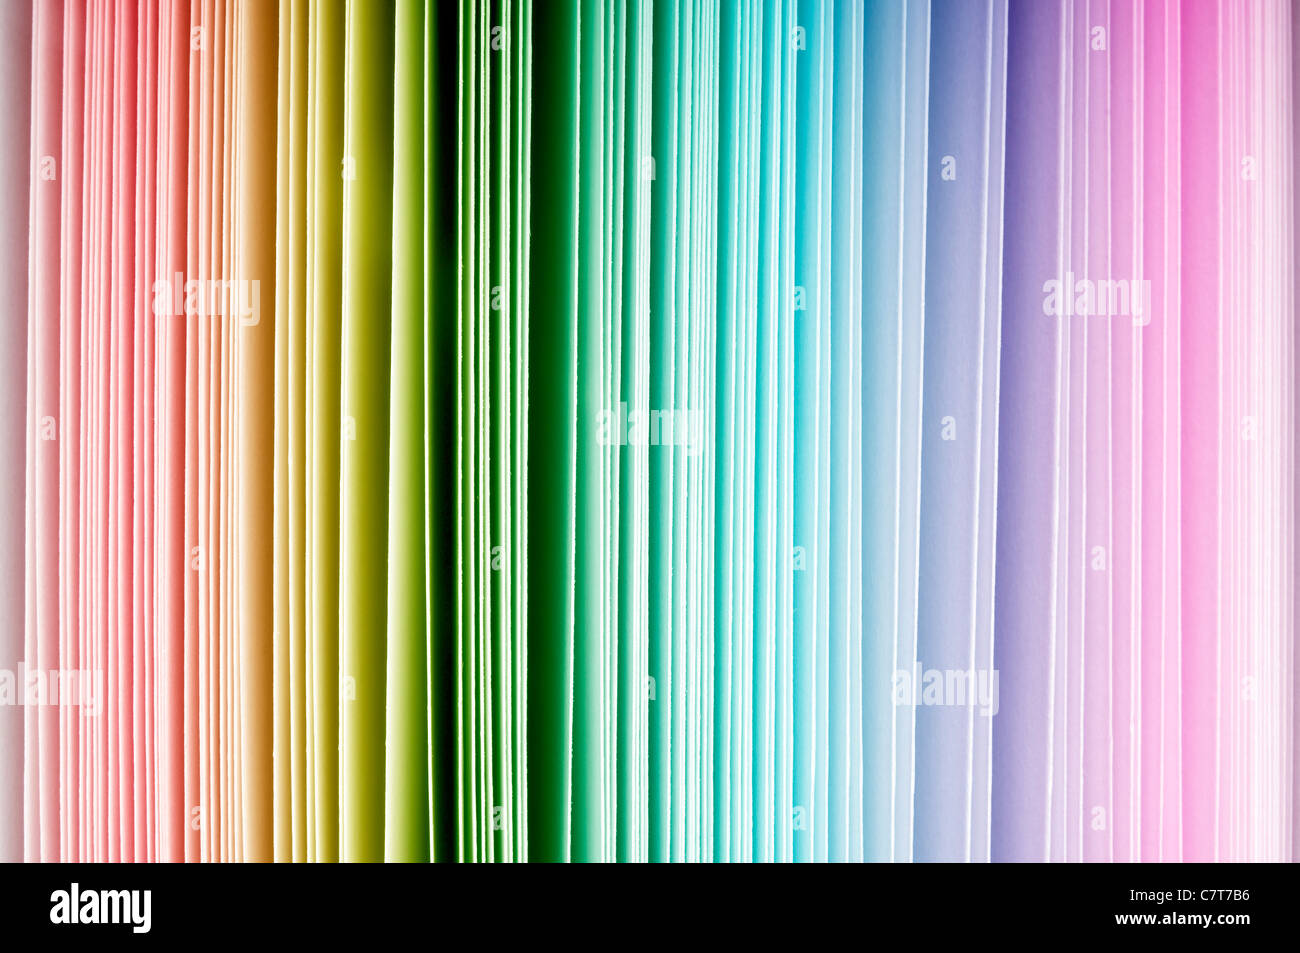 El espectro de los colores del arco iris de papel grueso extremos, de rojo a púrpura Foto de stock